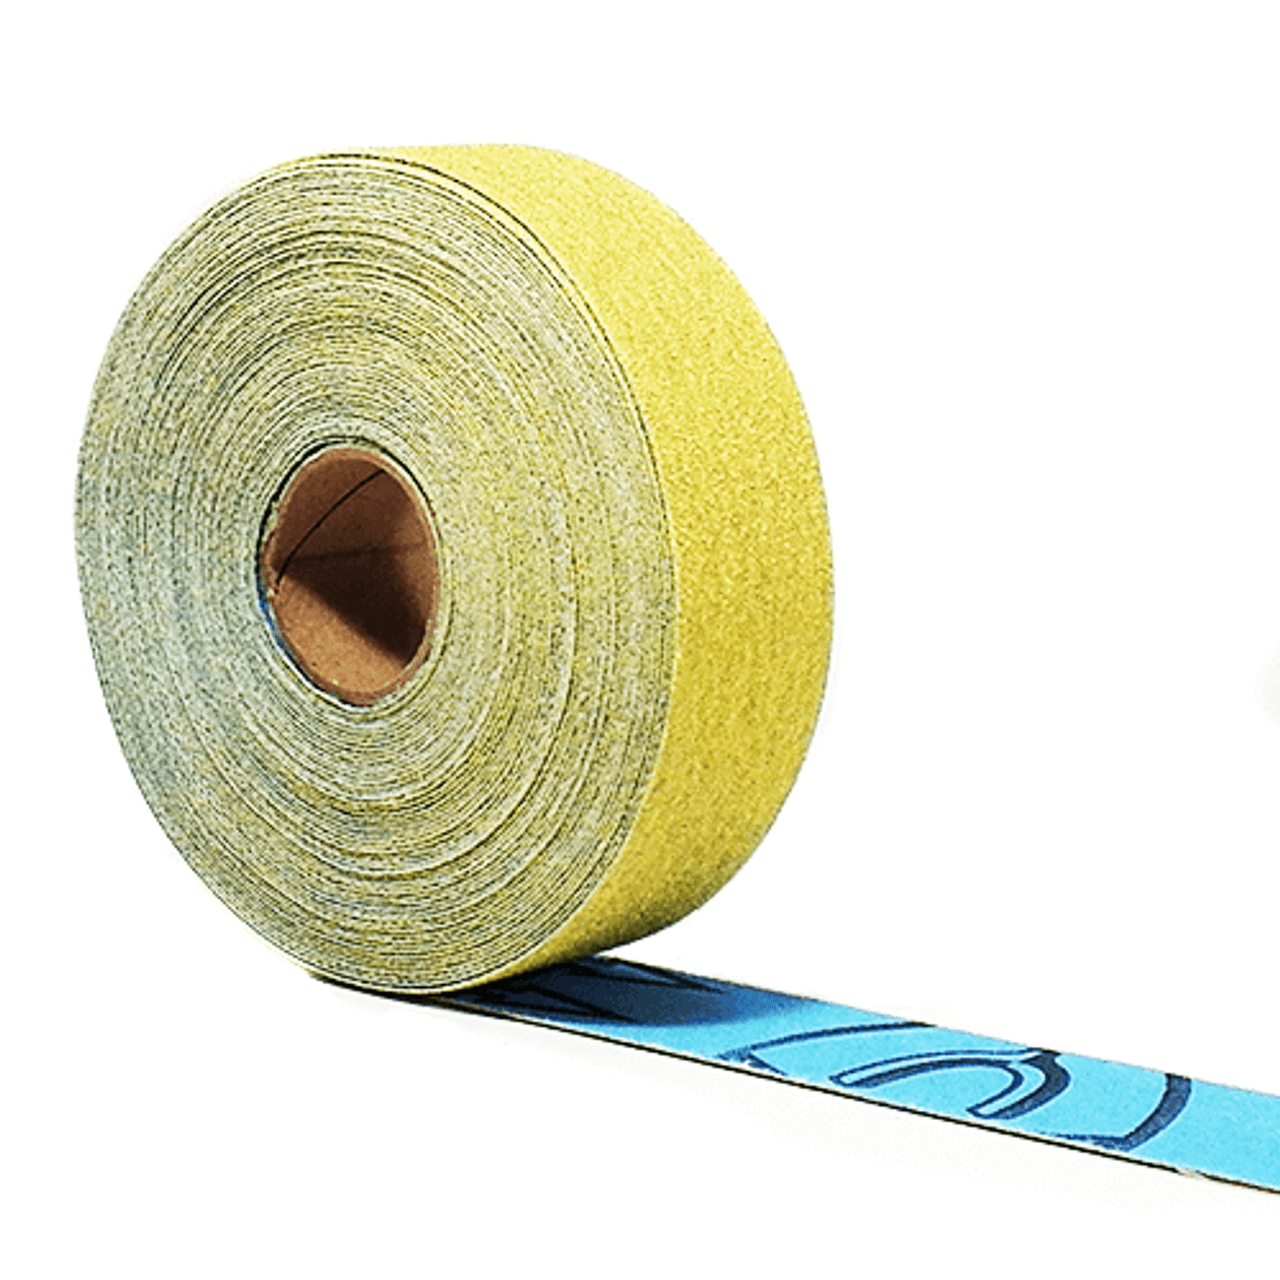 Klingspor Abrasives Gold Roll, 1"x 10MT (32.8FT) 180 Grit, J-Flex Cloth Backed Aluminum Oxide